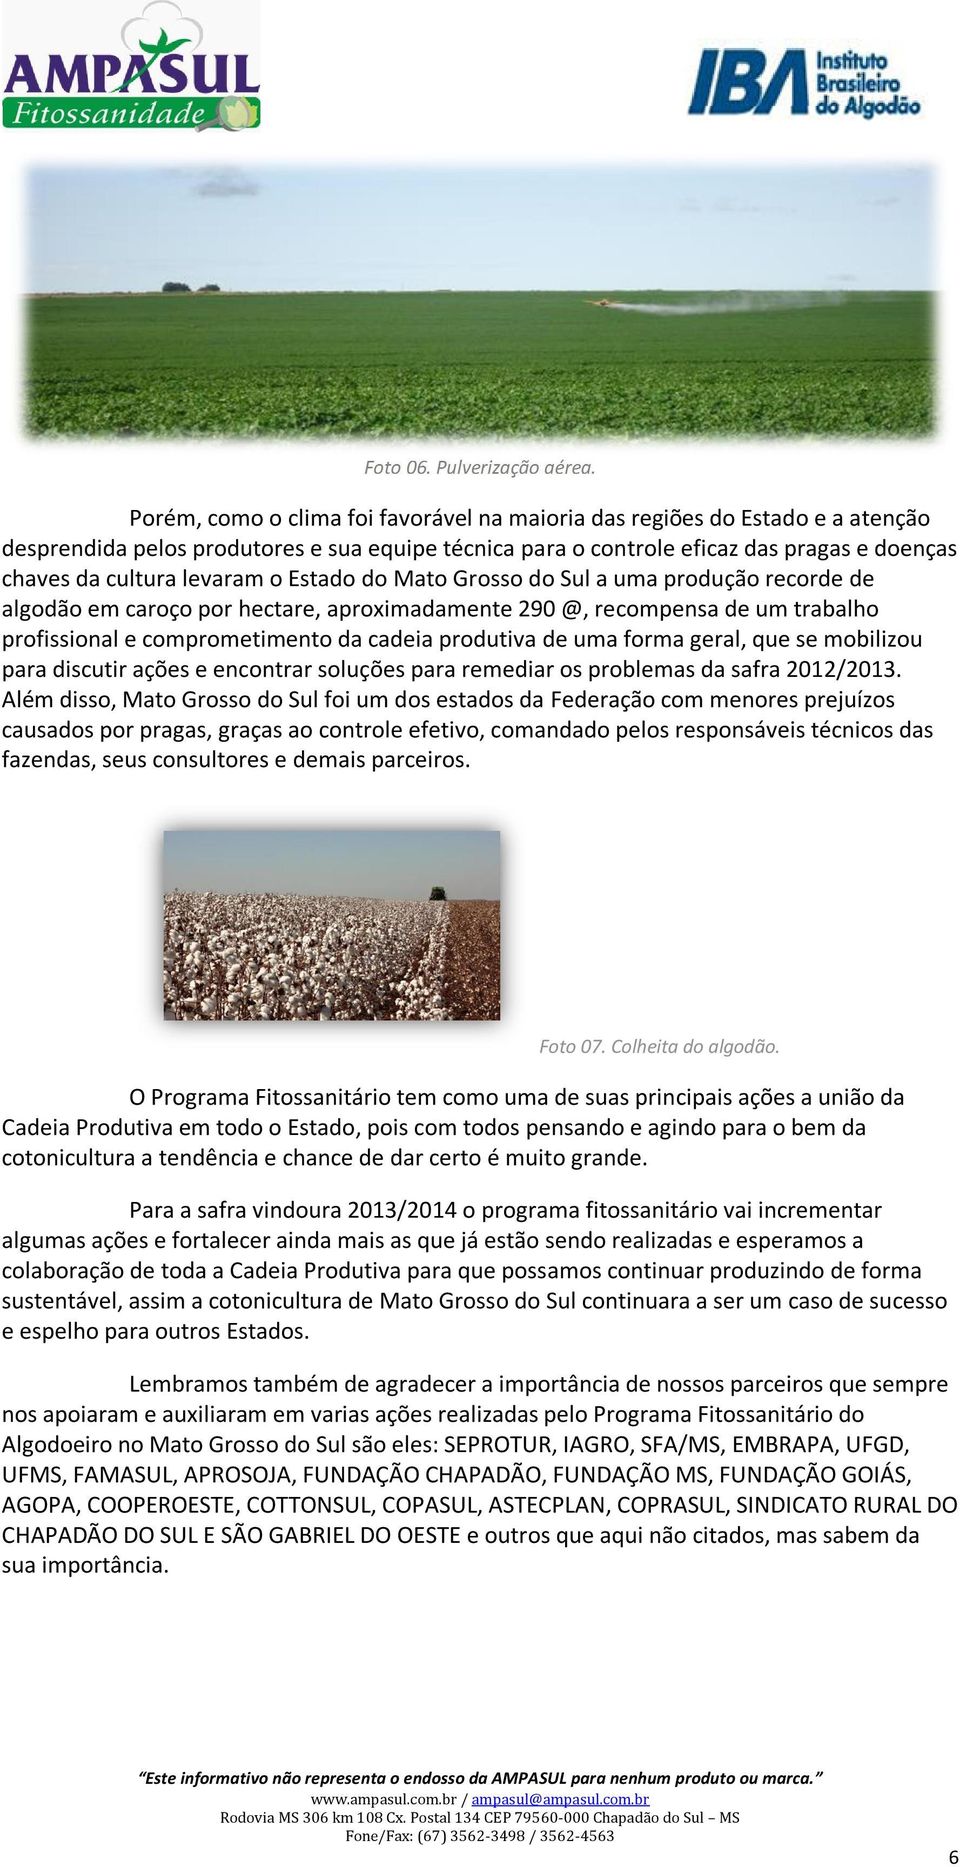 o Estado do Mato Grosso do Sul a uma produção recorde de algodão em caroço por hectare, aproximadamente 290 @, recompensa de um trabalho profissional e comprometimento da cadeia produtiva de uma